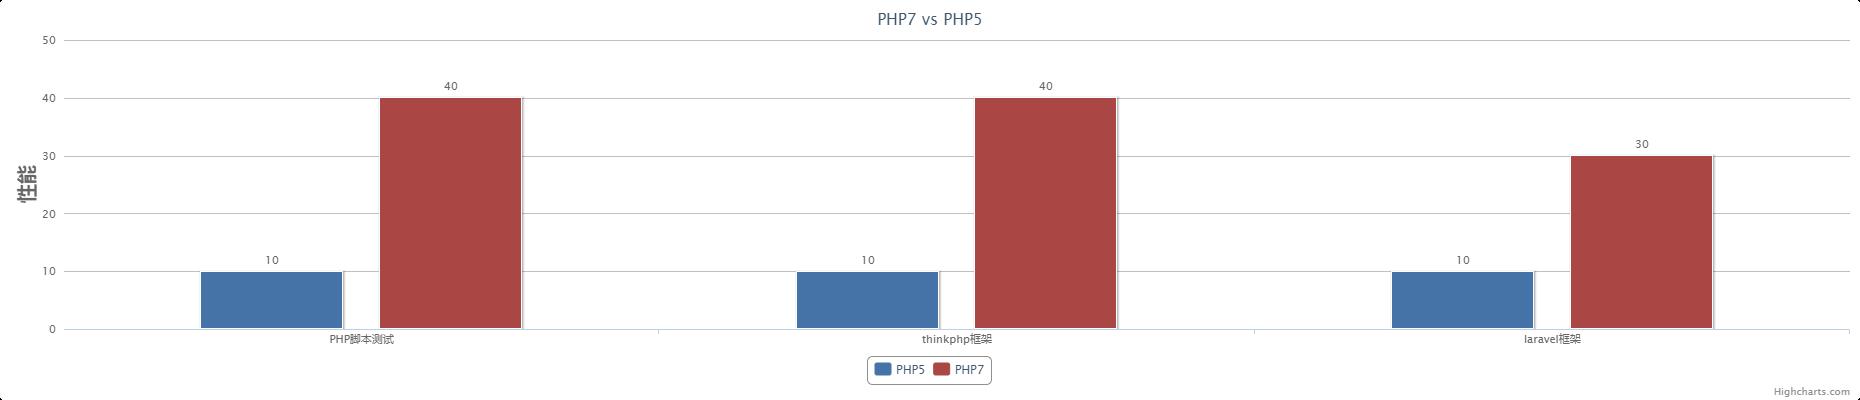 php7和php5对比 - 文章图片